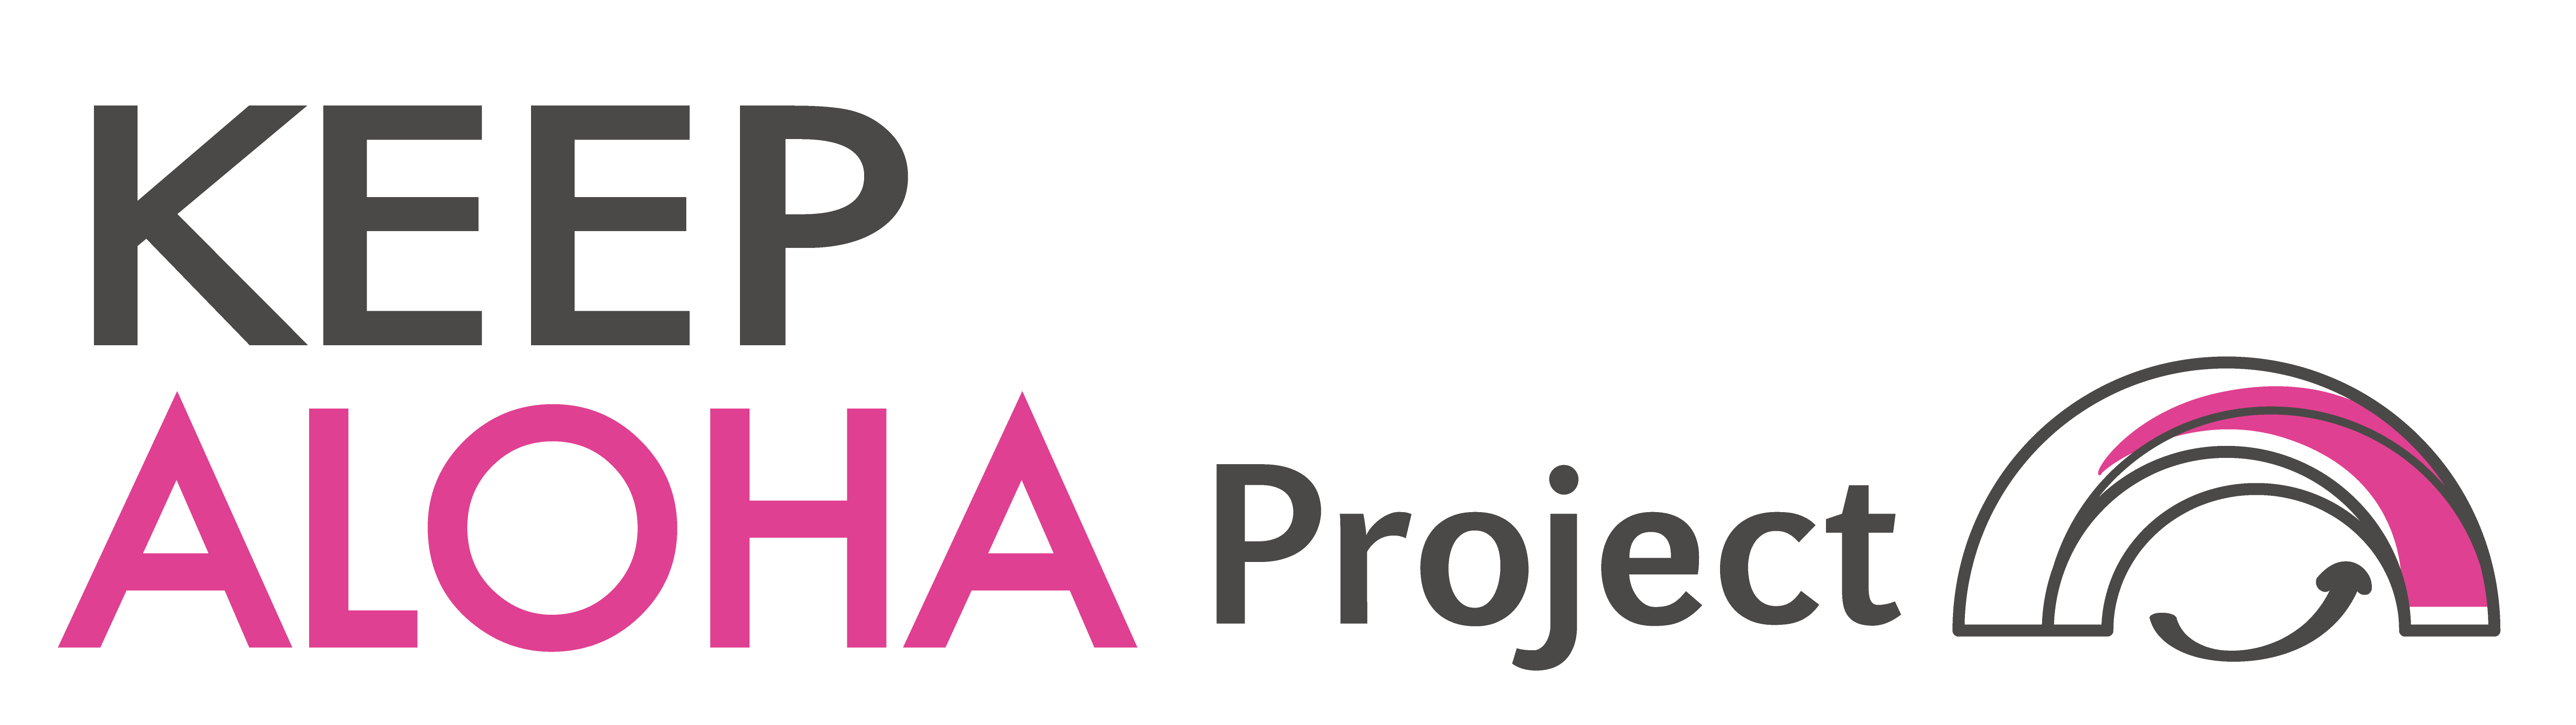 KEEP ALOHA Project